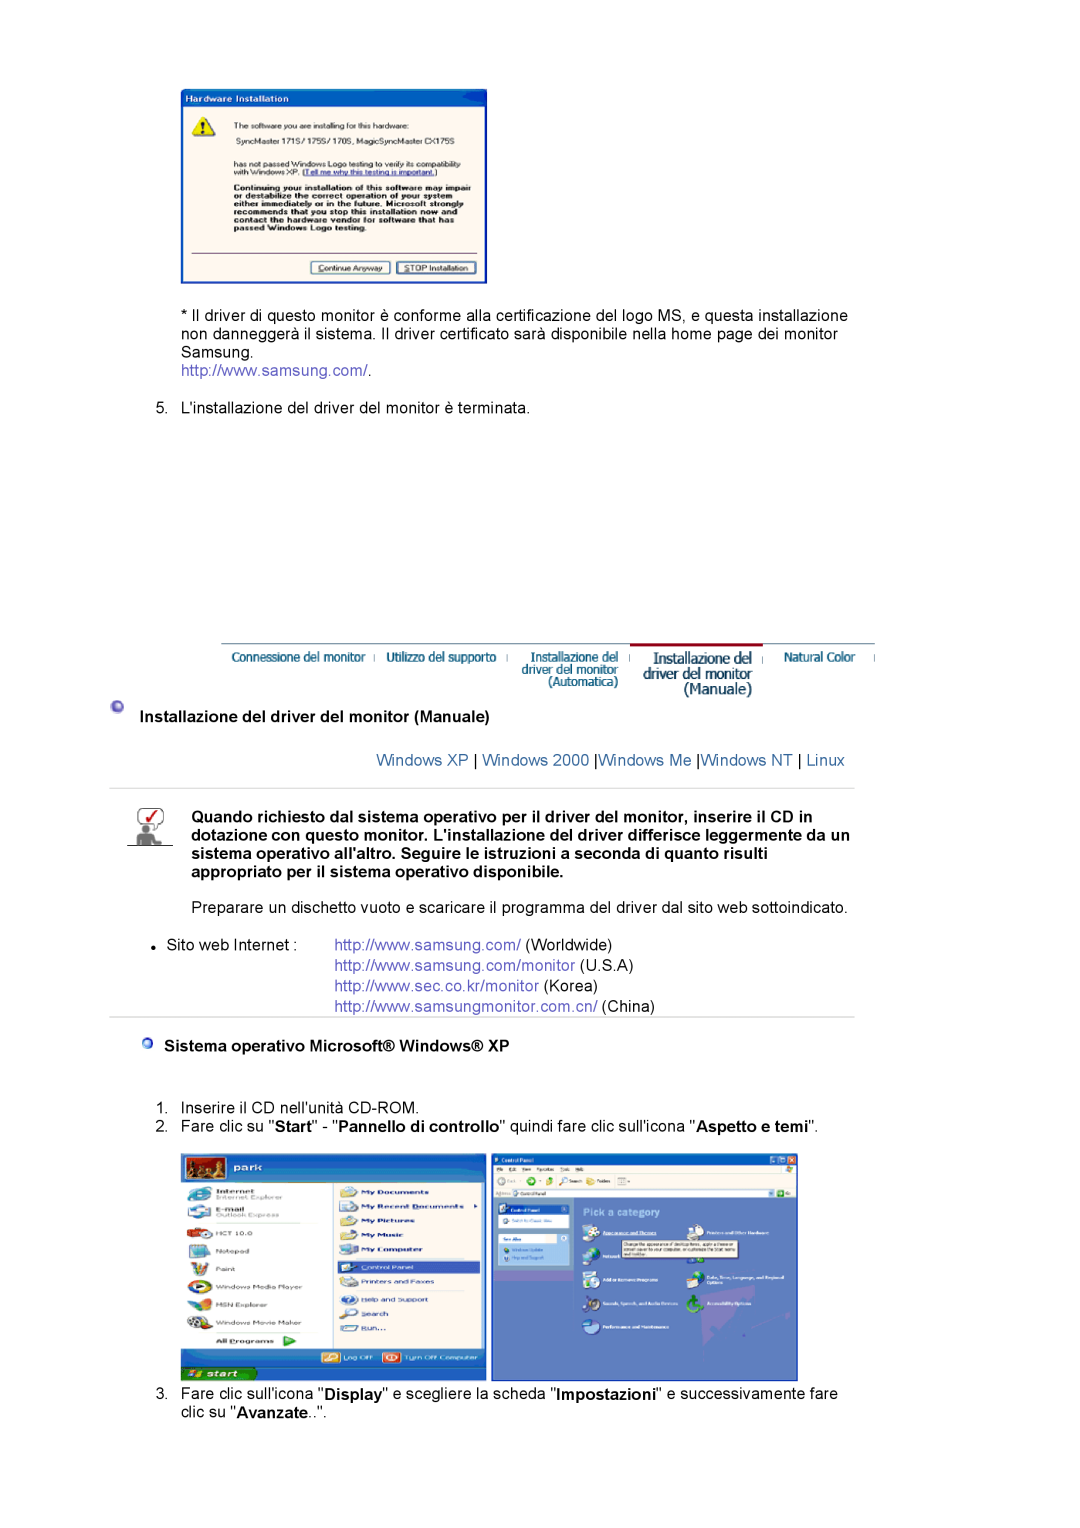 Samsung LS17MJVKS/EDC manual Installazione del driver del monitor Manuale, Sistema operativo Microsoft Windows XP 